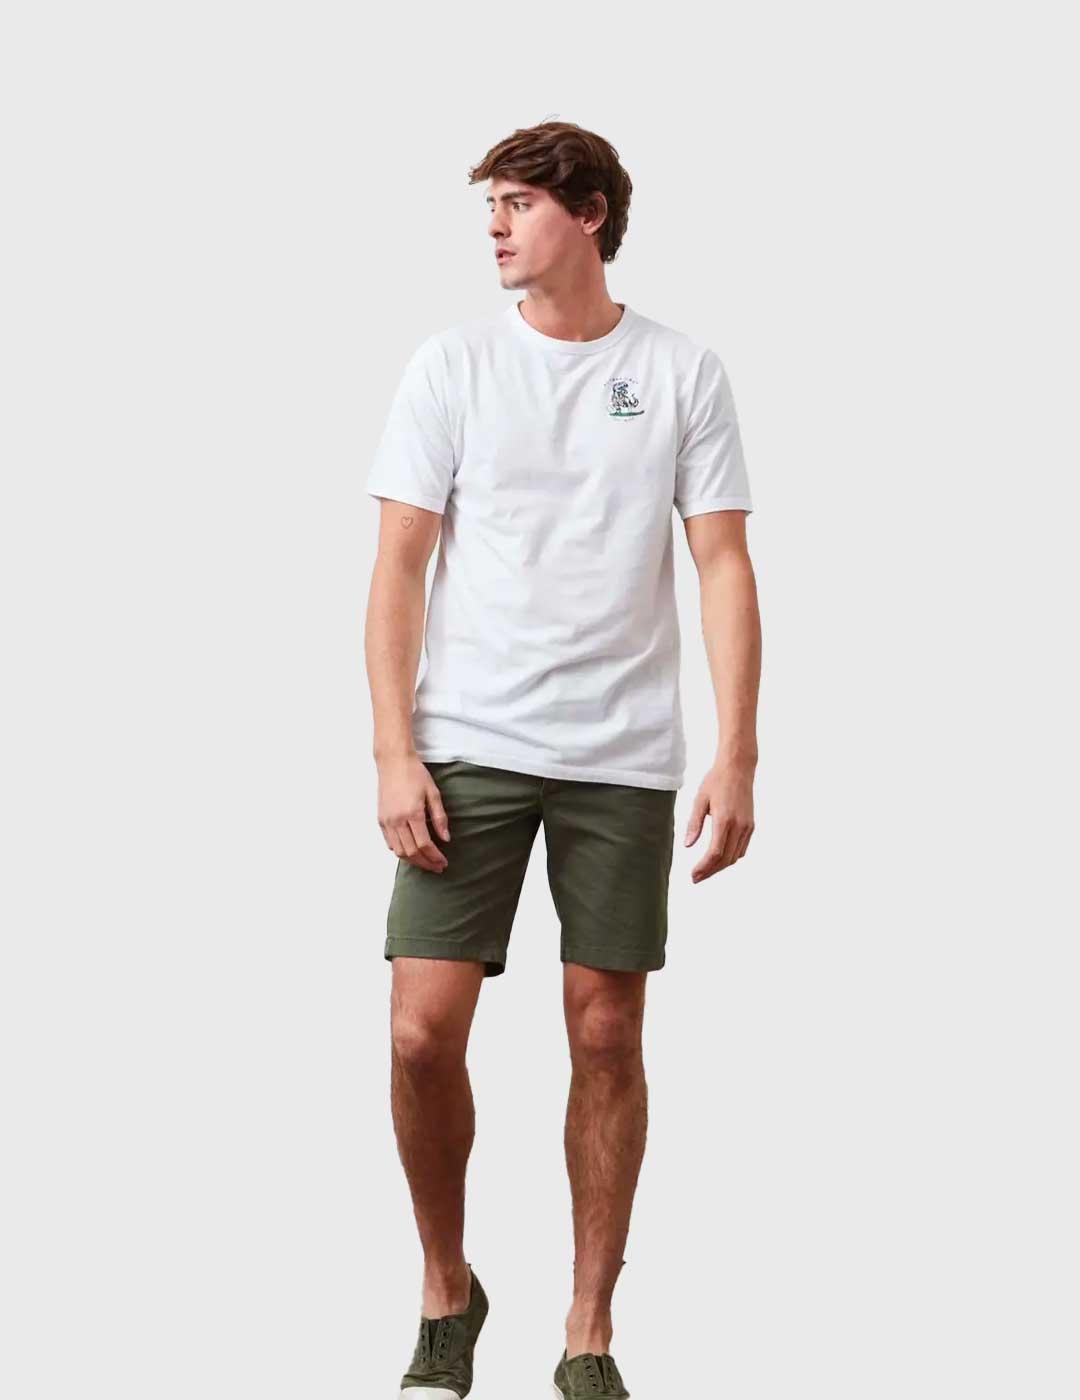 Camiseta Altonadock blanca para hombre